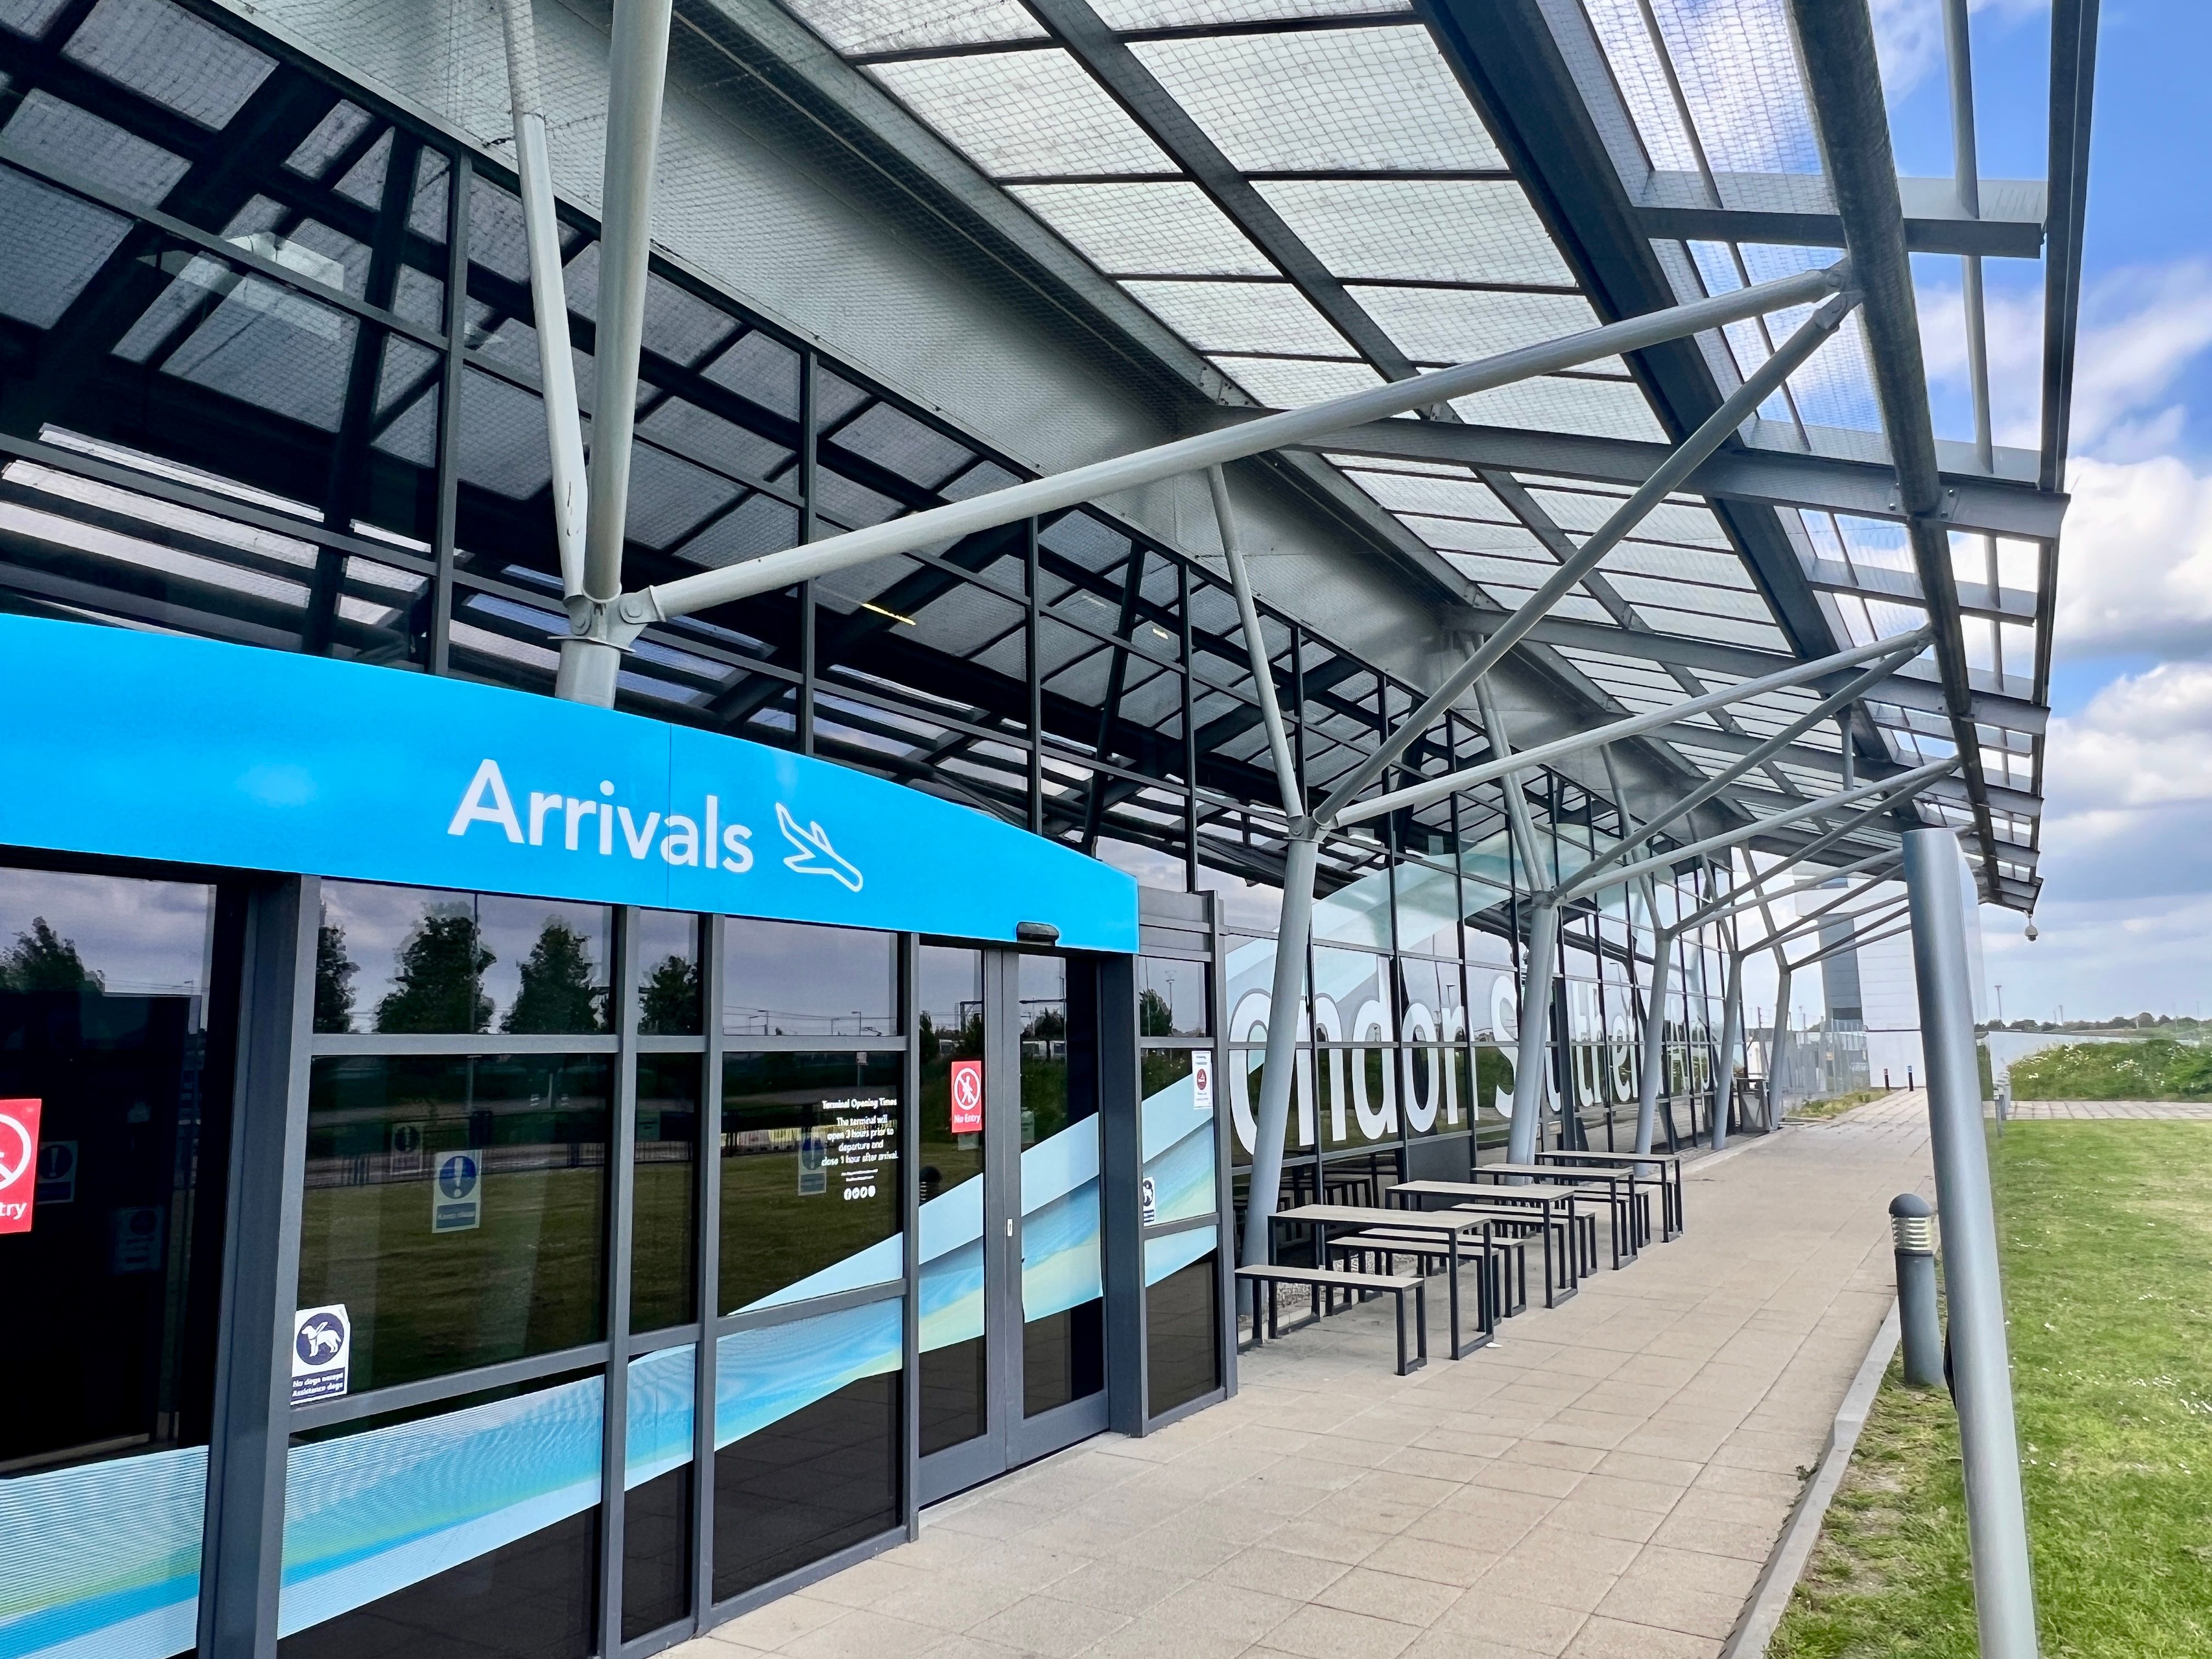 London Southend Airport arrivals entrance